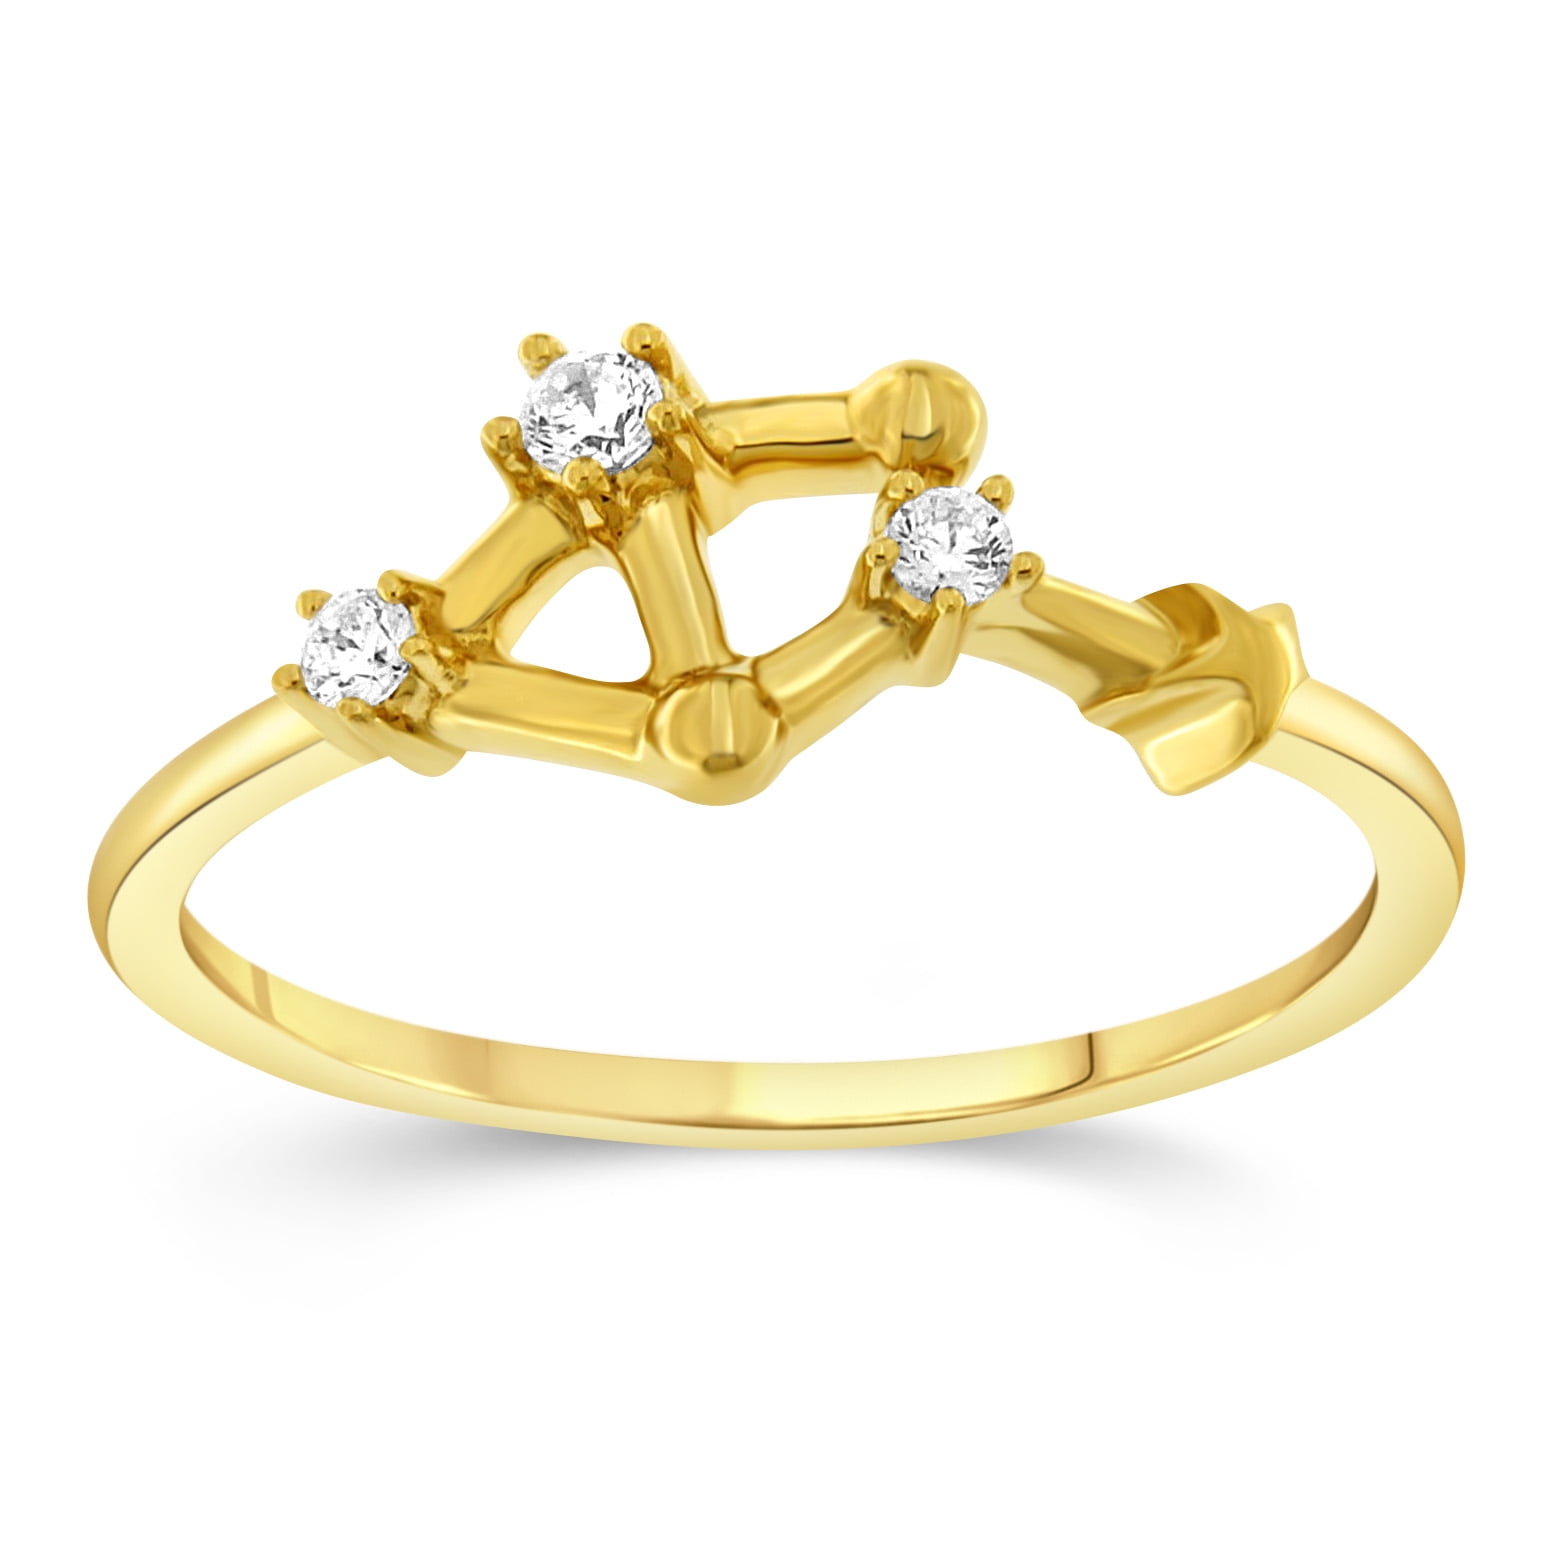 Zodiac sign rings – Liry's Jewelry